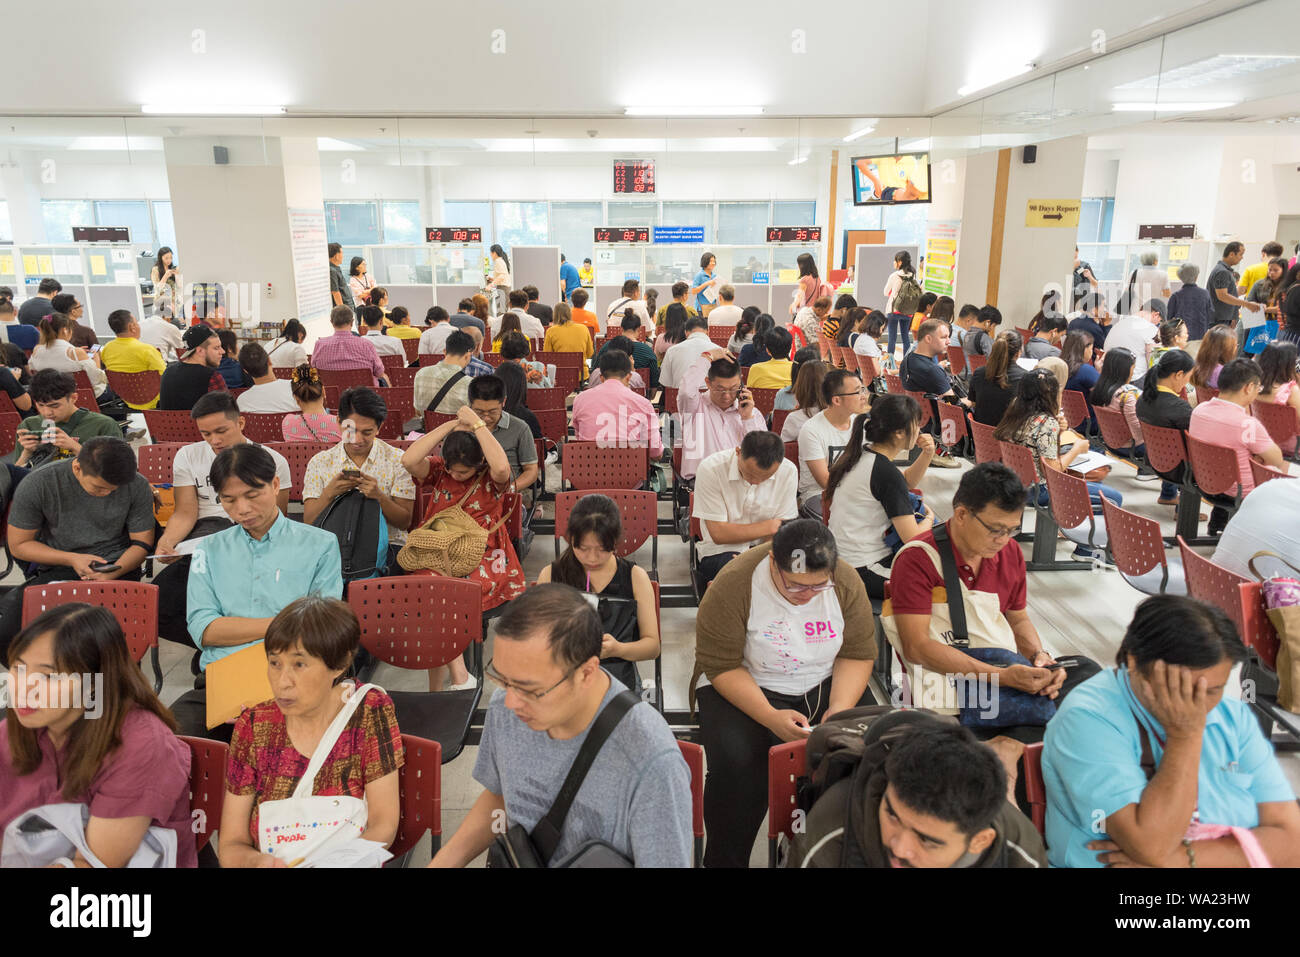 Bangkok - 11 juillet 2019 : les gens attendent pour demander une prolongation de visa et se re-entry permit au bureau d'immigration de la Thaïlande surpeuplés. Banque D'Images